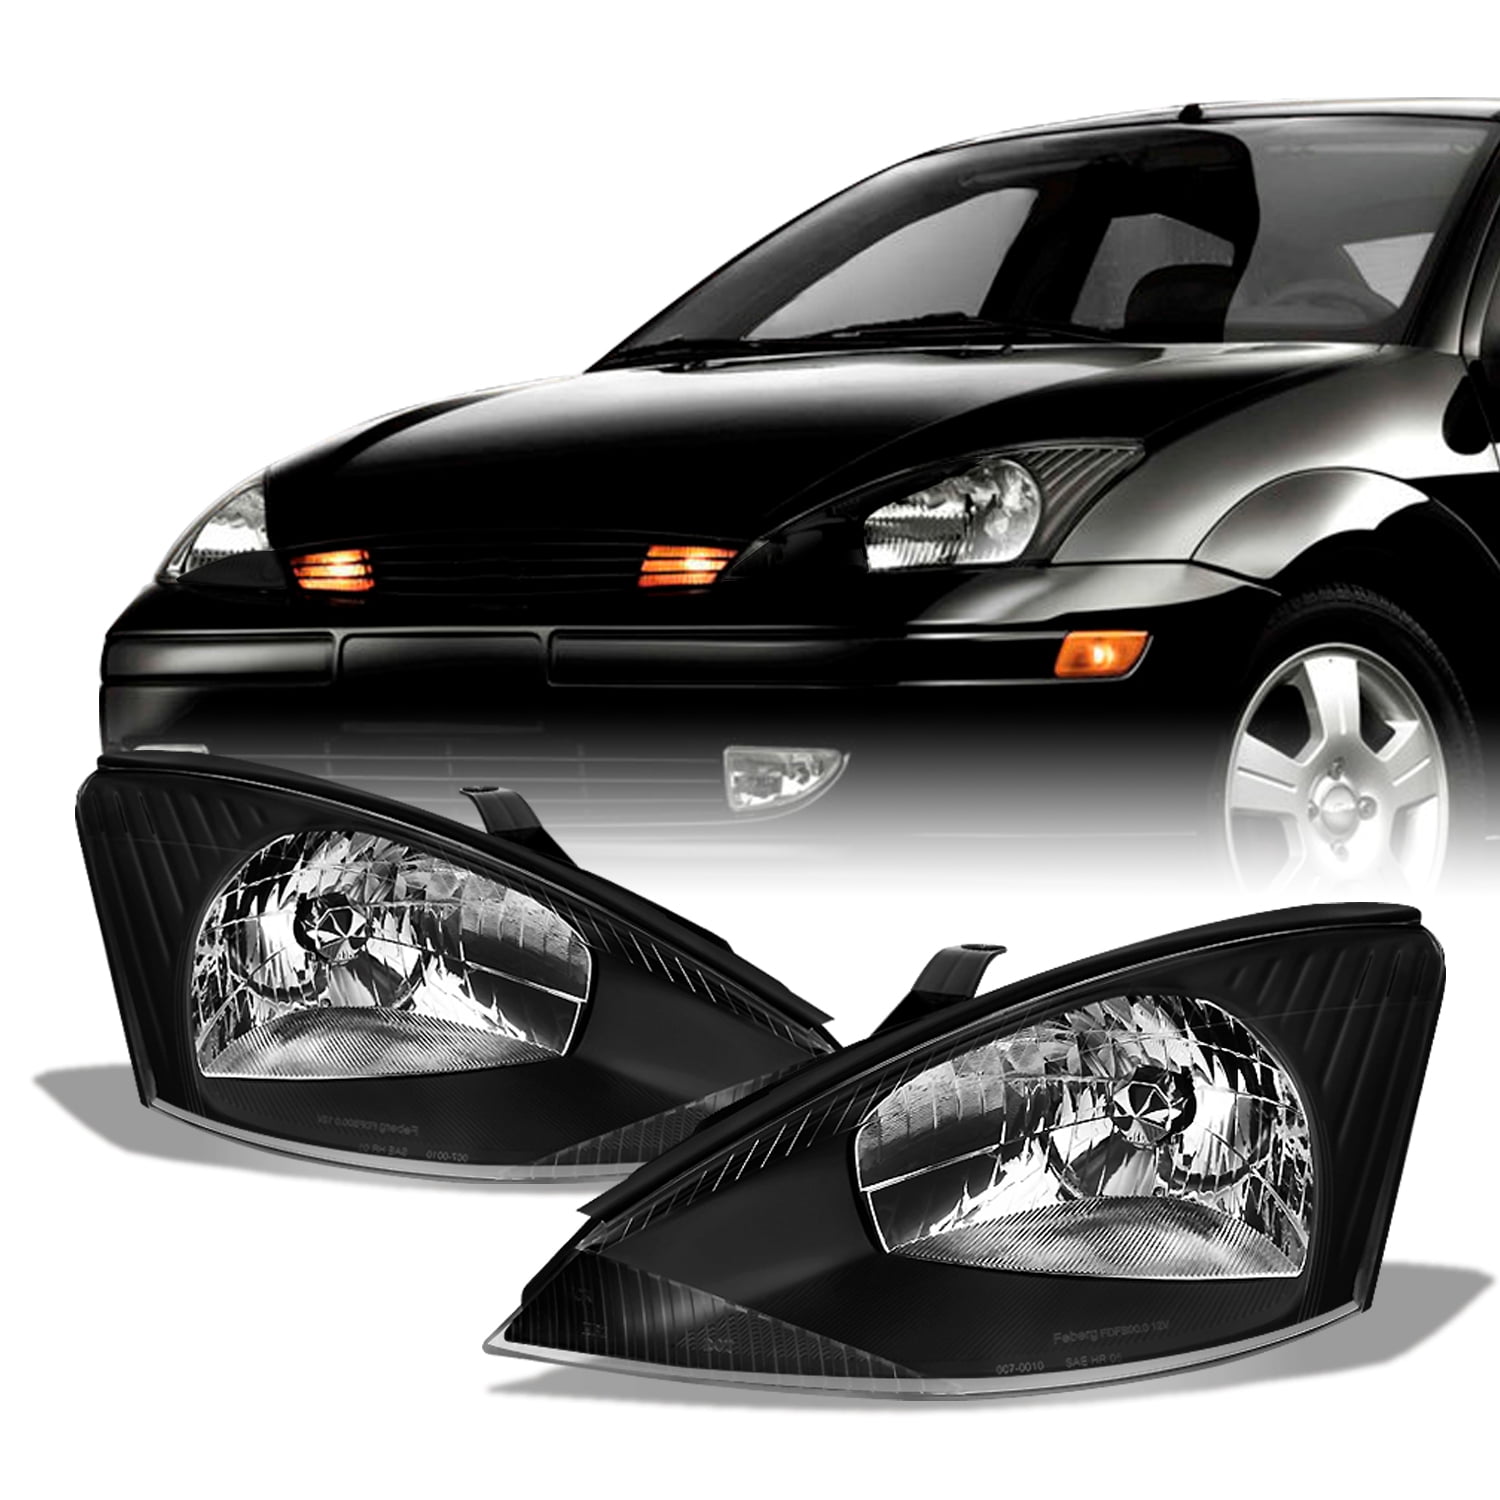 3stk/satz Getriebe Drehzahlsensor Fit für Ford Focus Fiesta Fusion